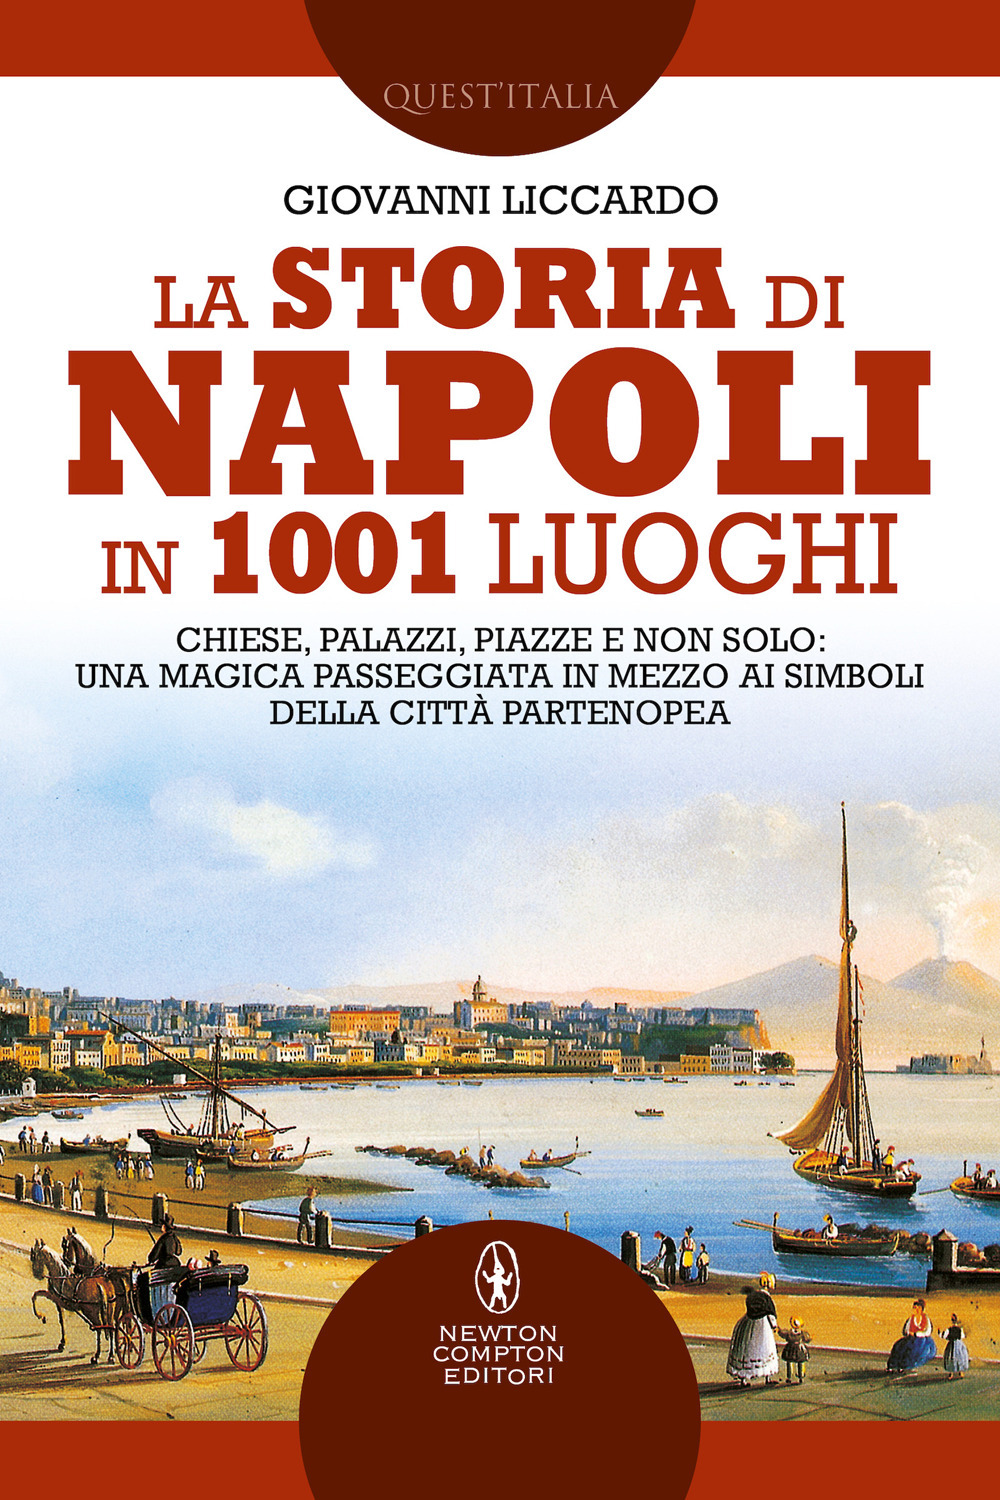 La storia di Napoli in 1001 luoghi. Chiese, palazzi, piazze e non solo: una magica passeggiata in mezzo ai simboli della città partenopea